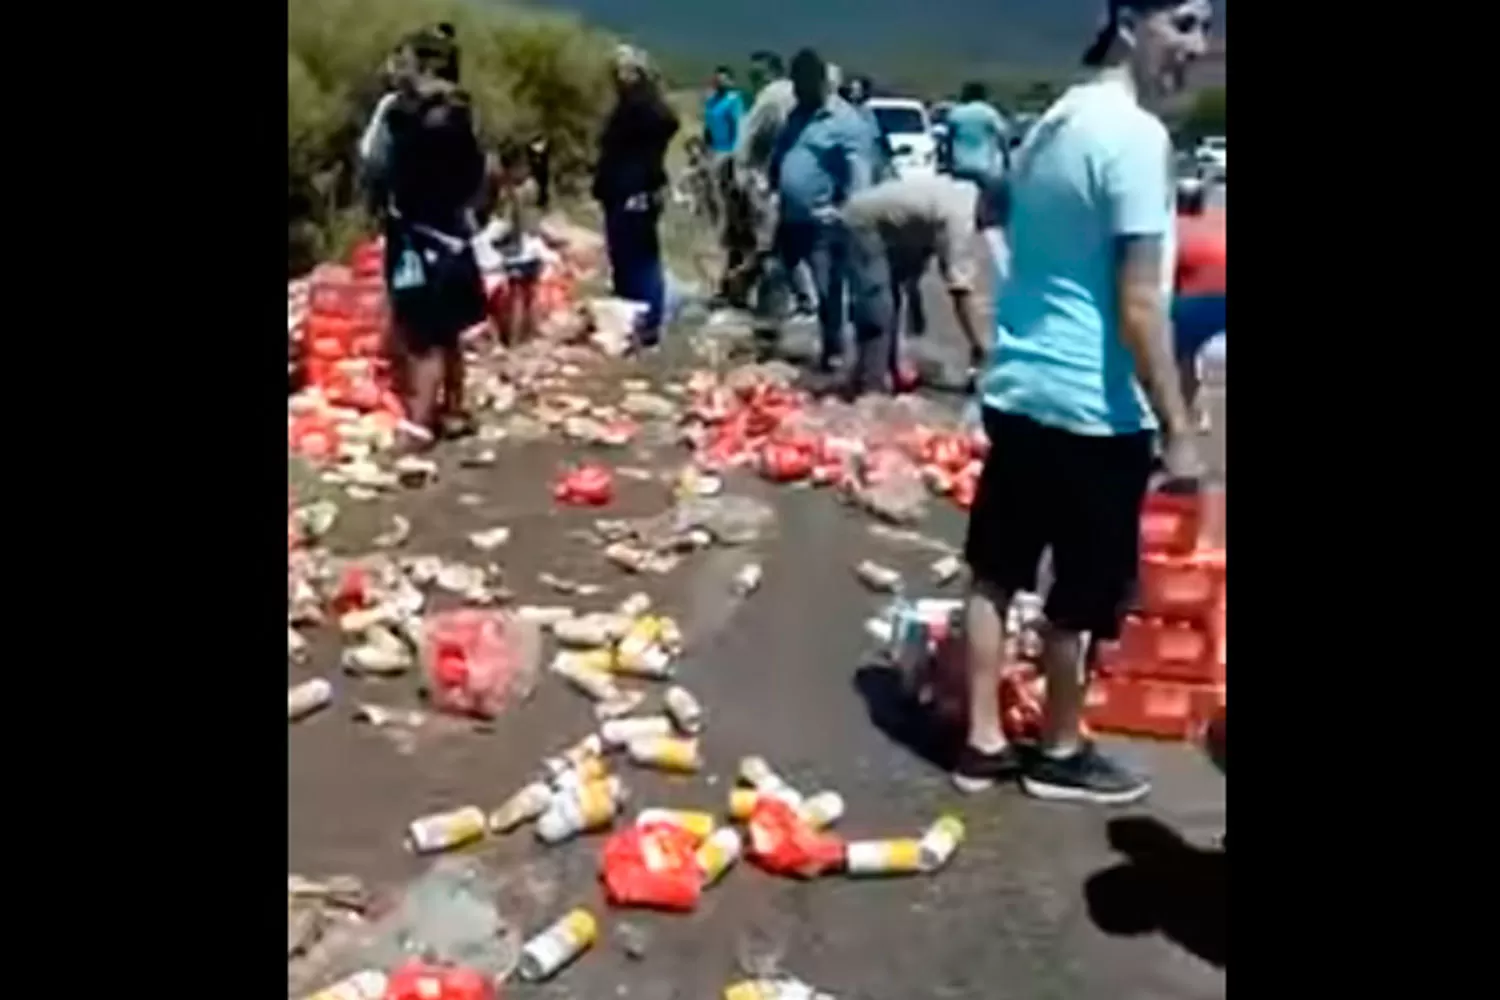 OPORTUNISTAS. Algunas personas aprovecharon el accidente para llevarse algunas latas de cerveza.